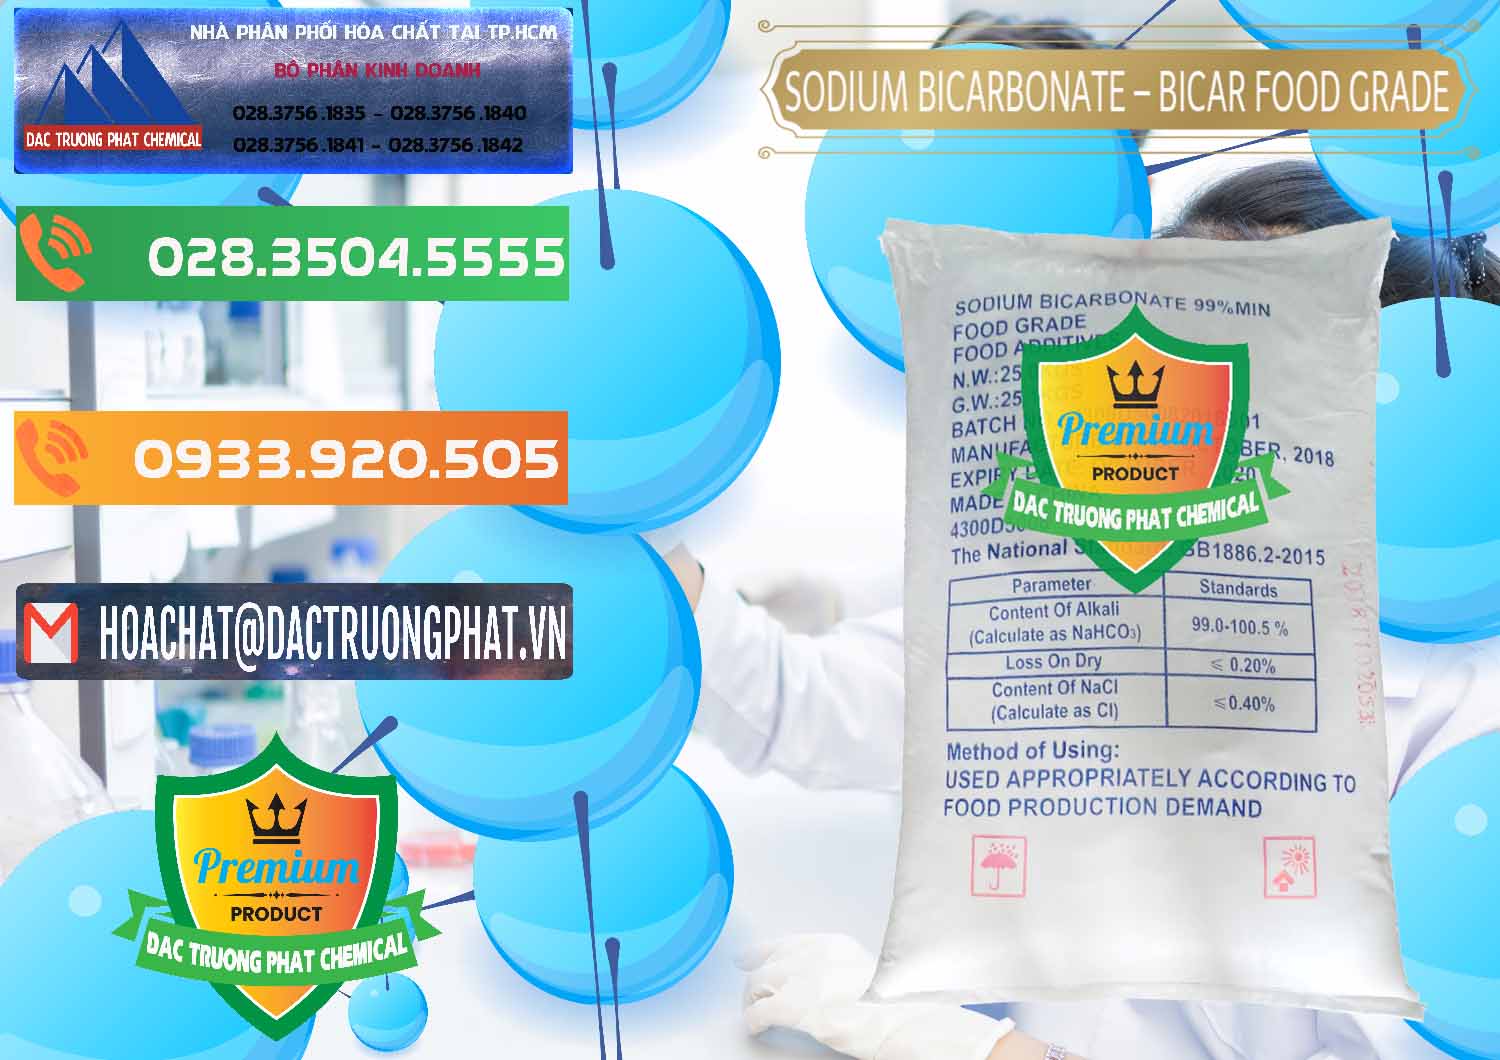 Cty chuyên bán - cung cấp Sodium Bicarbonate – Bicar NaHCO3 Food Grade Trung Quốc China - 0138 - Cty nhập khẩu _ cung cấp hóa chất tại TP.HCM - hoachatxulynuoc.com.vn